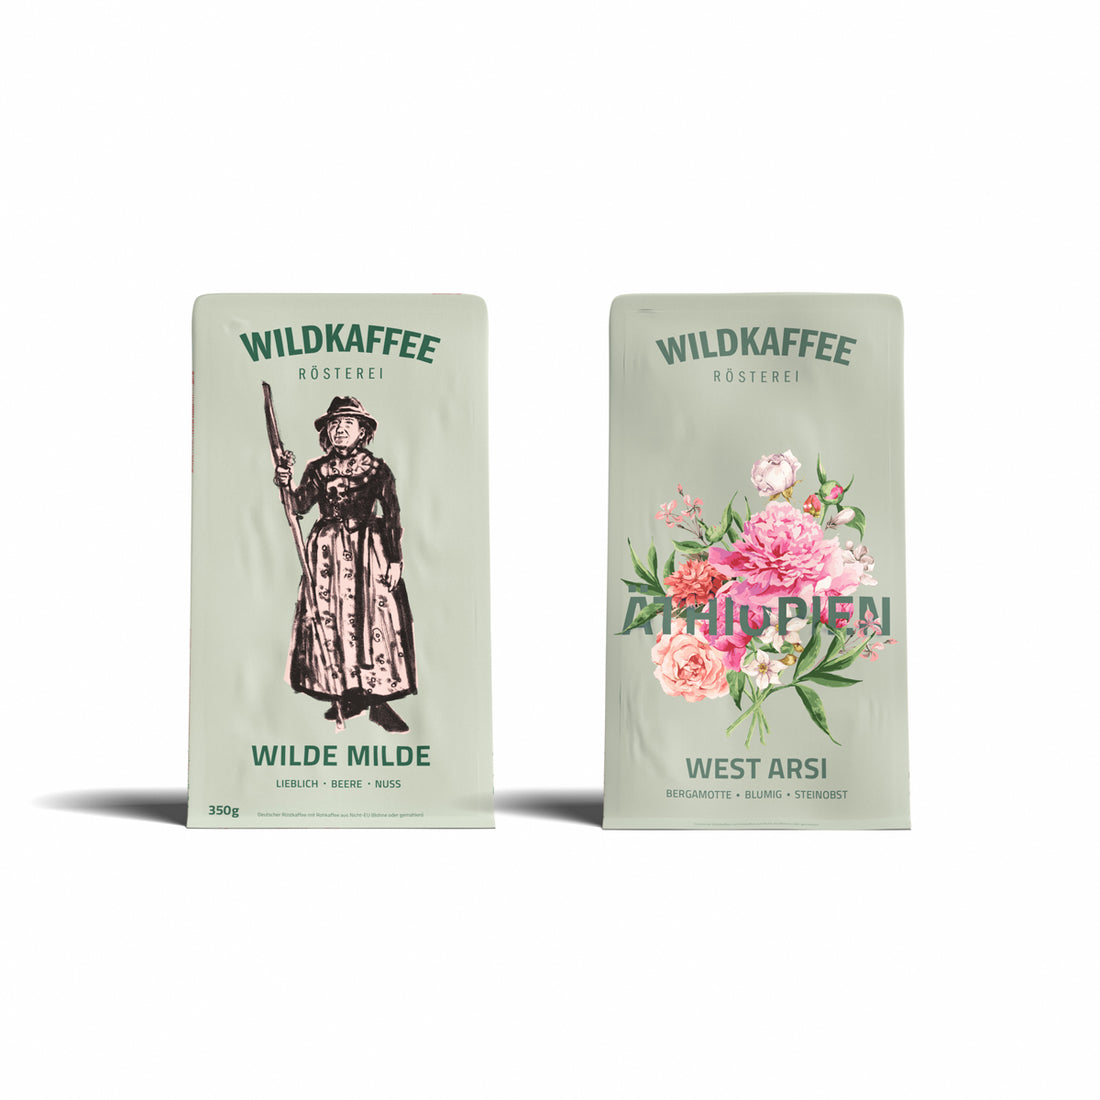 probierpakete-mittlere-röstung-wildkaffee